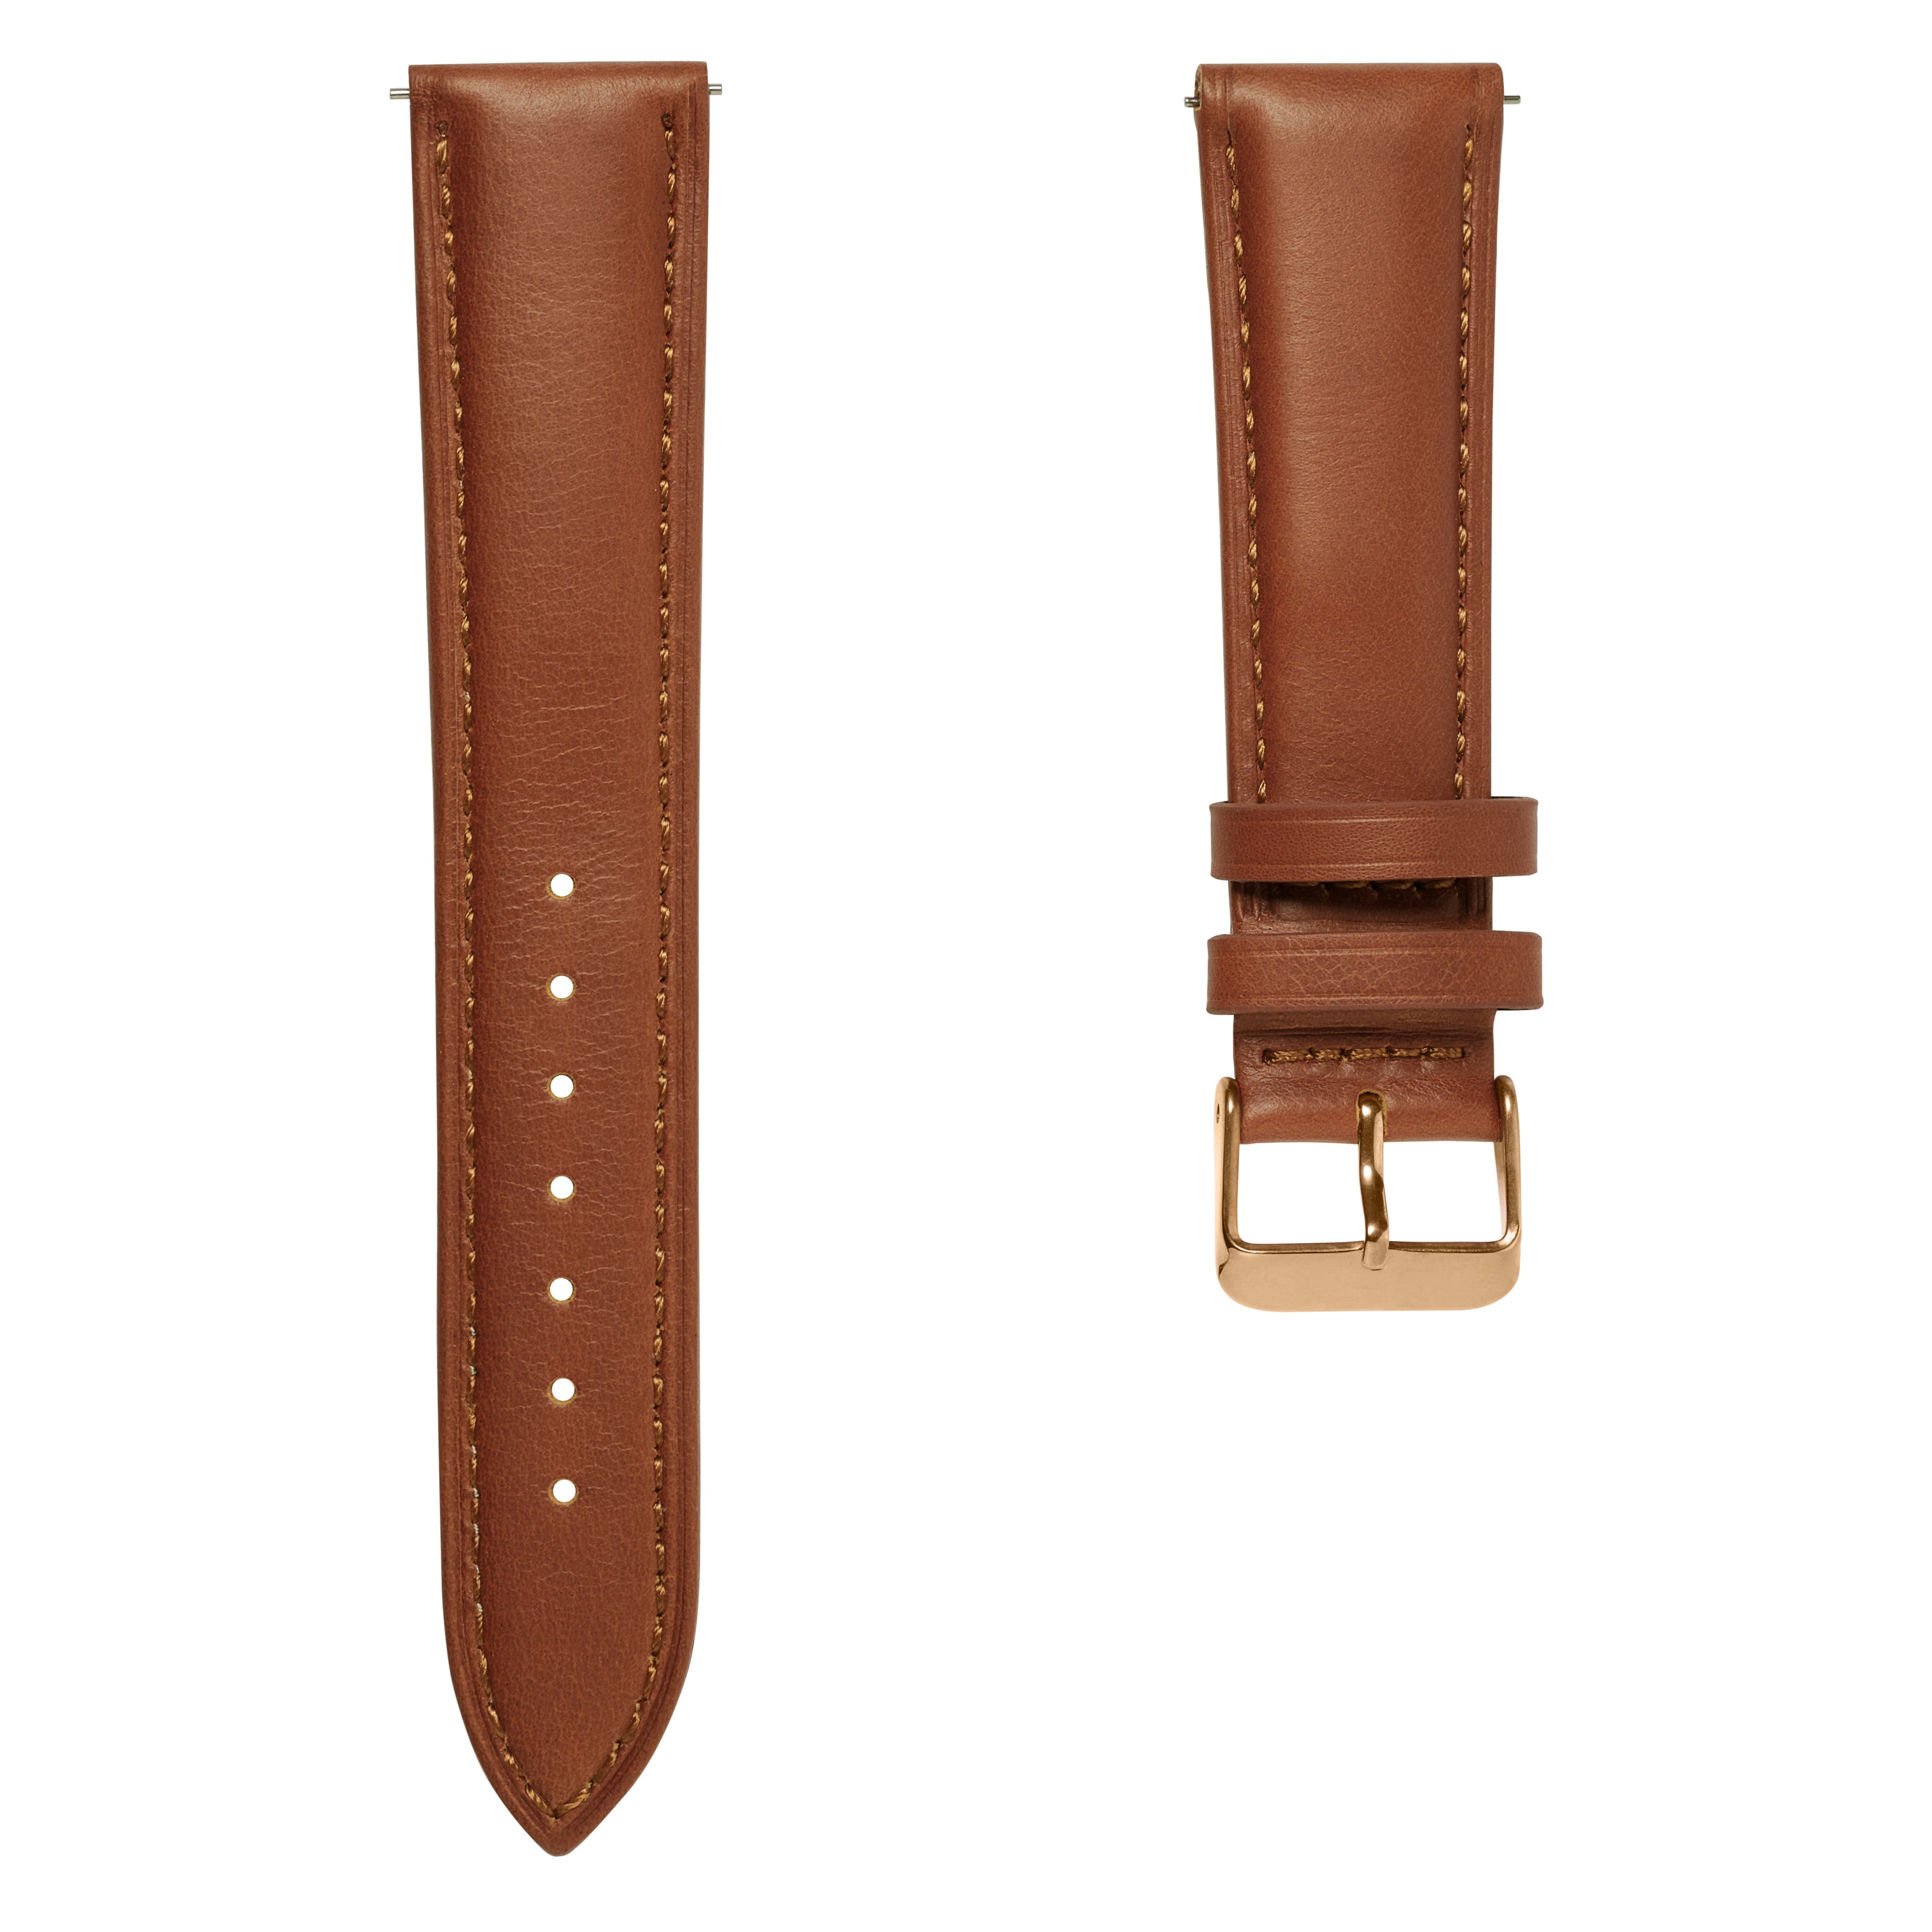 Bracelet de montre en cuir brun havane de 21 mm avec boucle rose gold - Système de fixation rapide